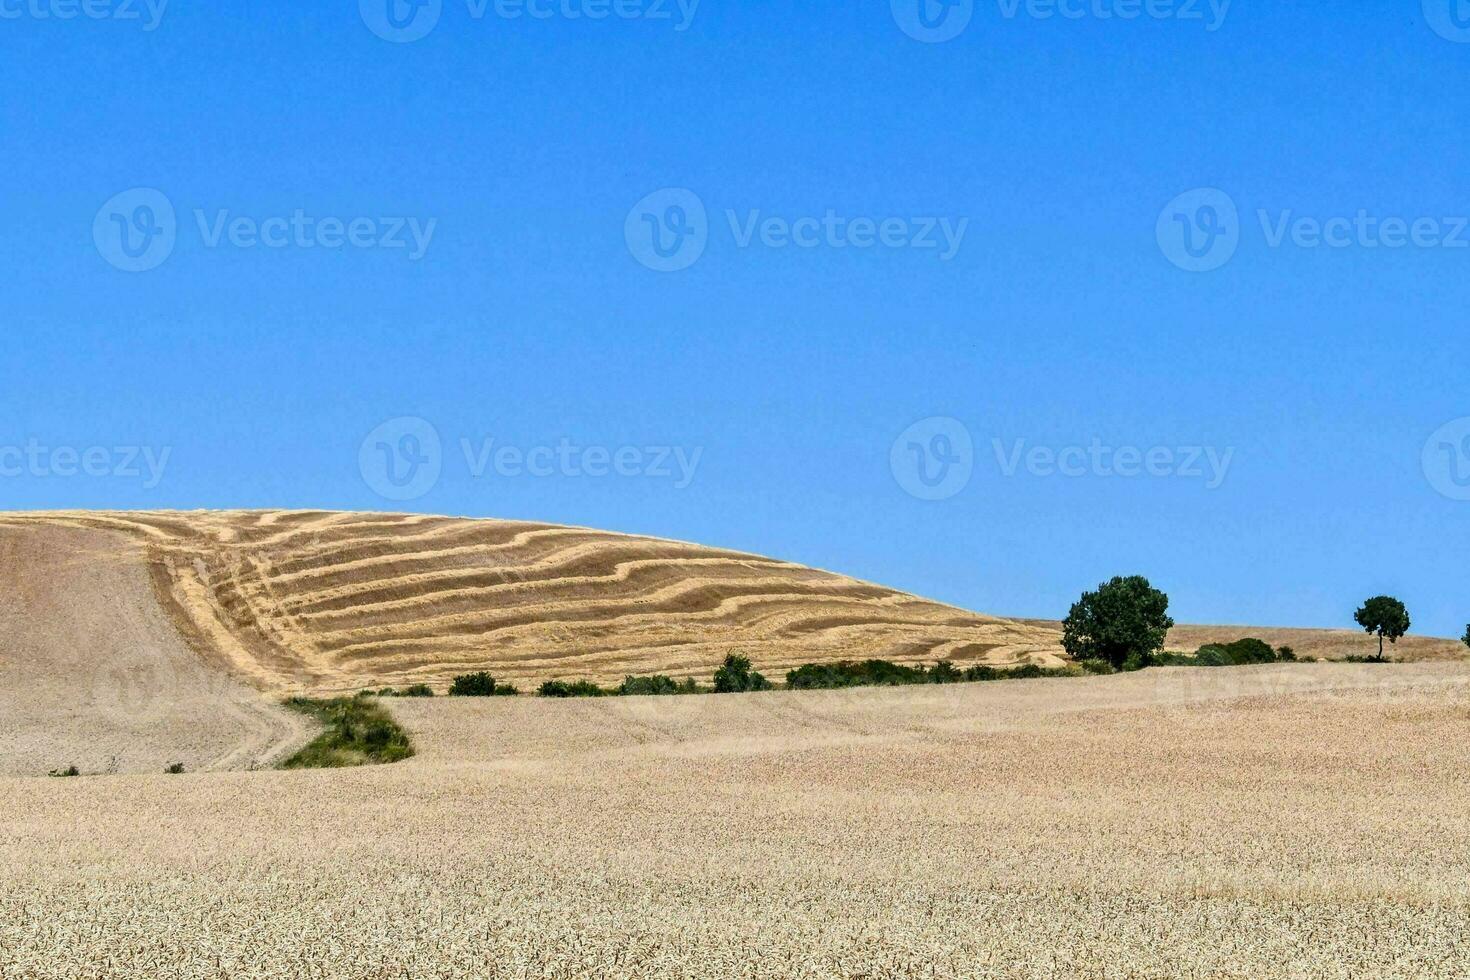 vista escénica del desierto foto